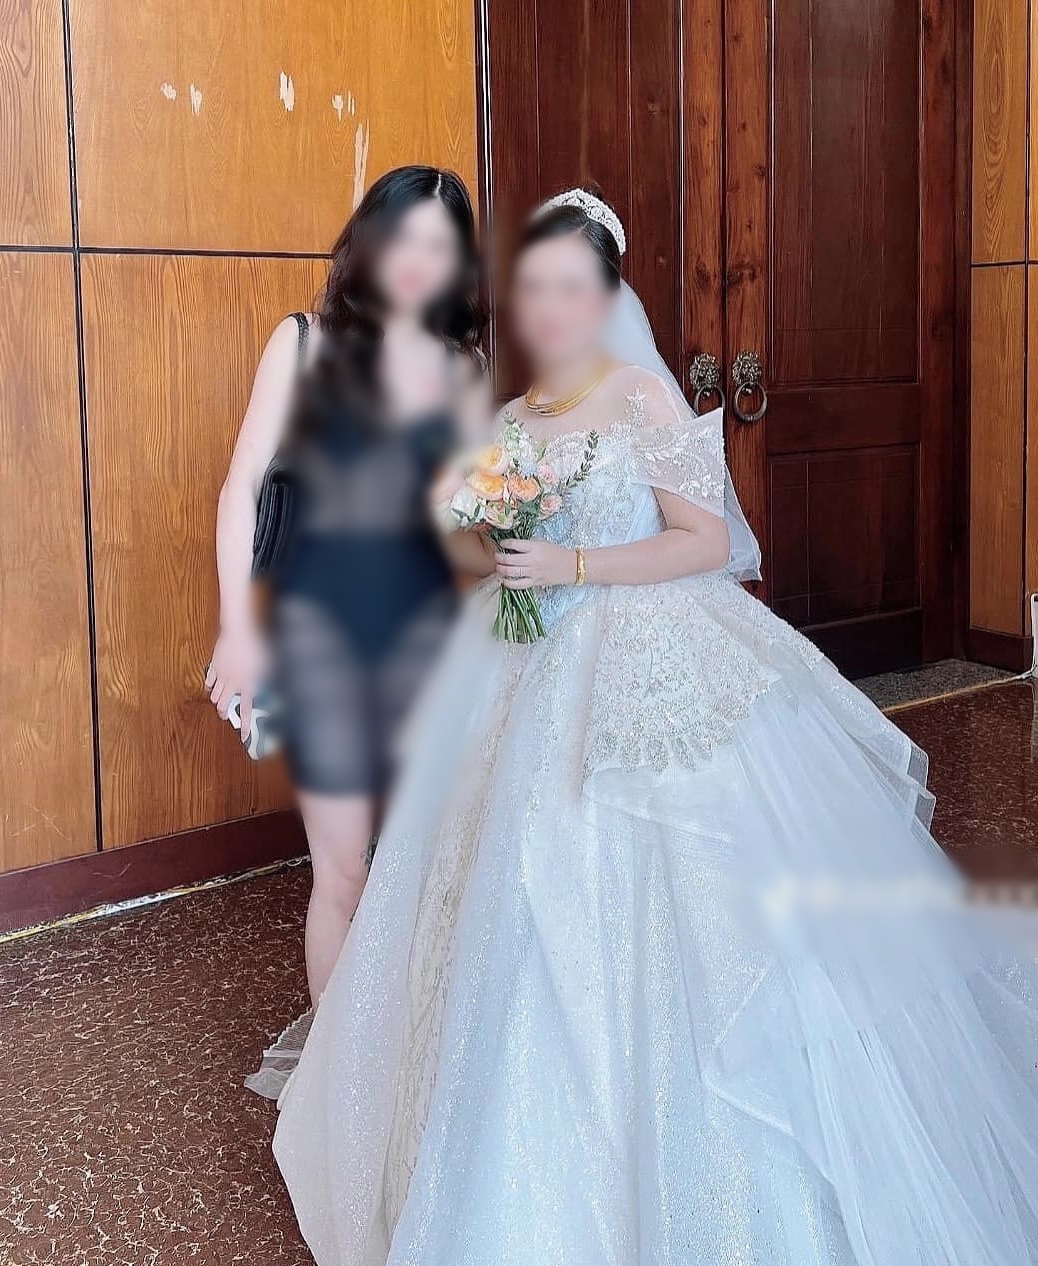 Cô gái được cho là chiếm spotlight khi diện đầm 'xuyên thấu' đến đám cưới.